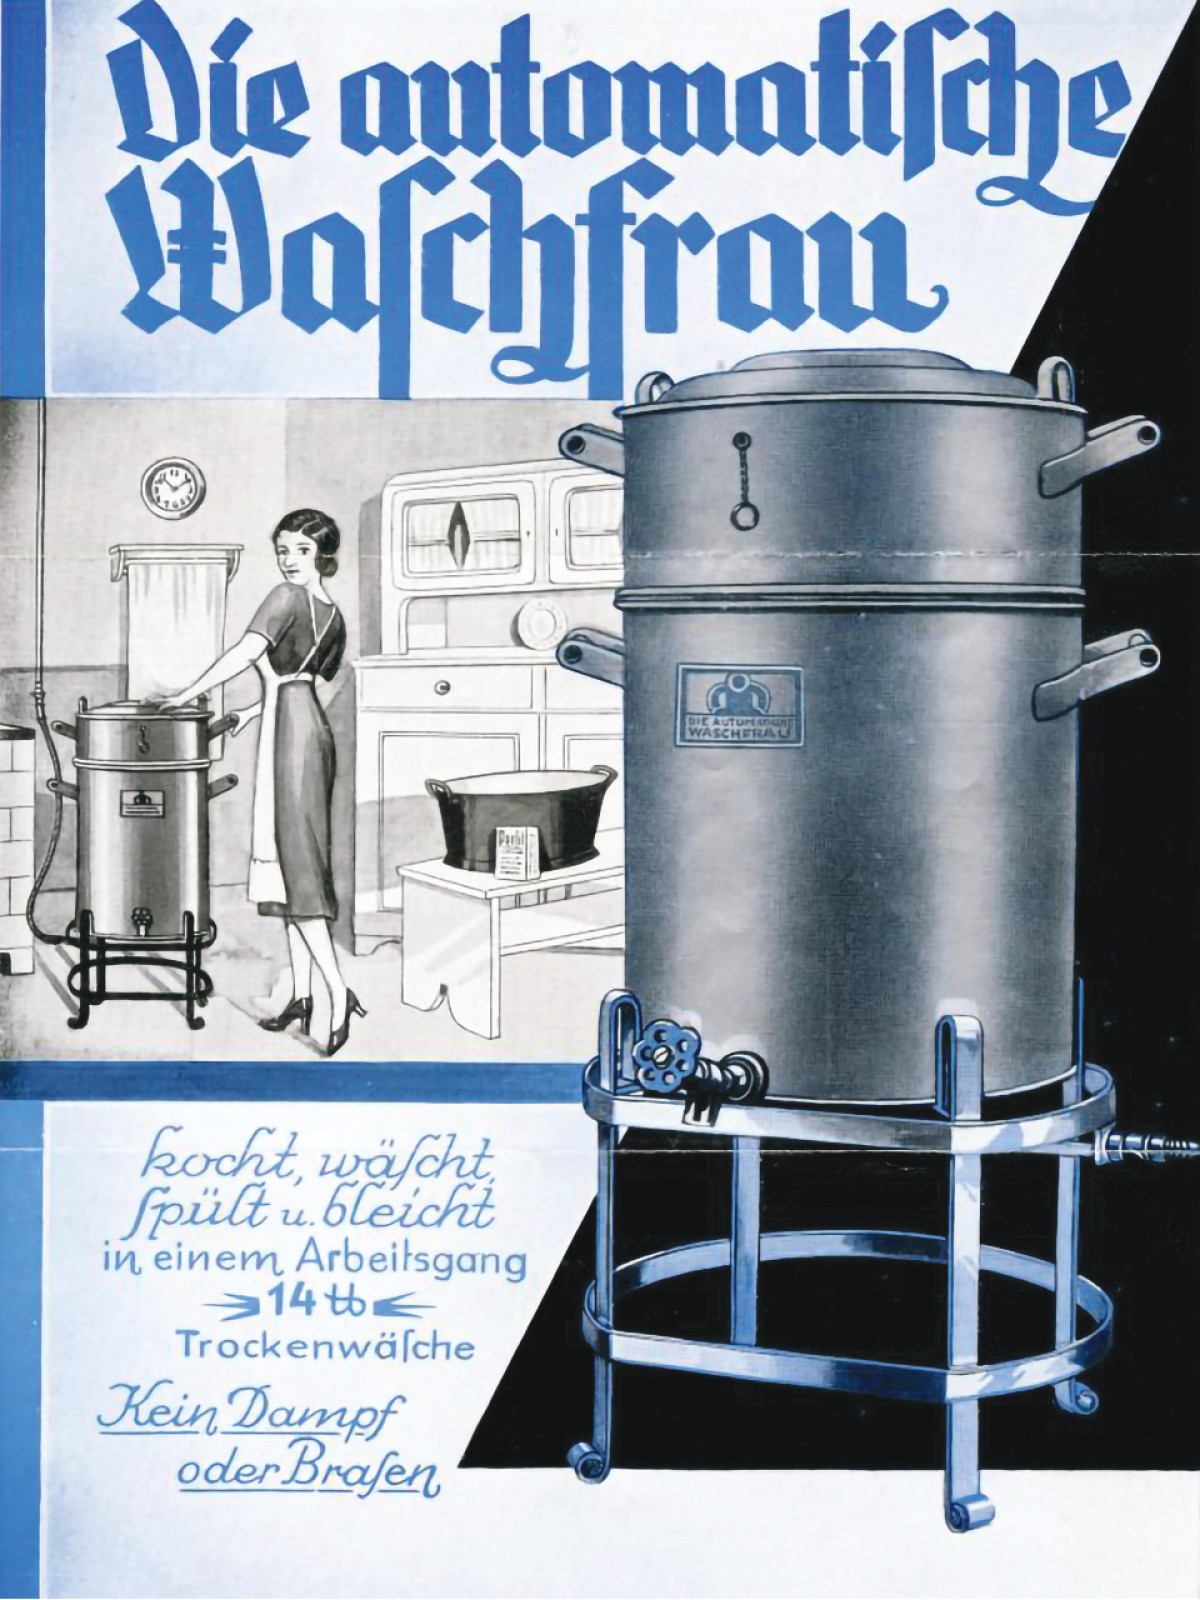 Werbebroschüre „Die automatische Waschfrau“, 1920er-Jahre: Werbebroschüre „Die automatische Waschfrau“, 1920er-Jahre